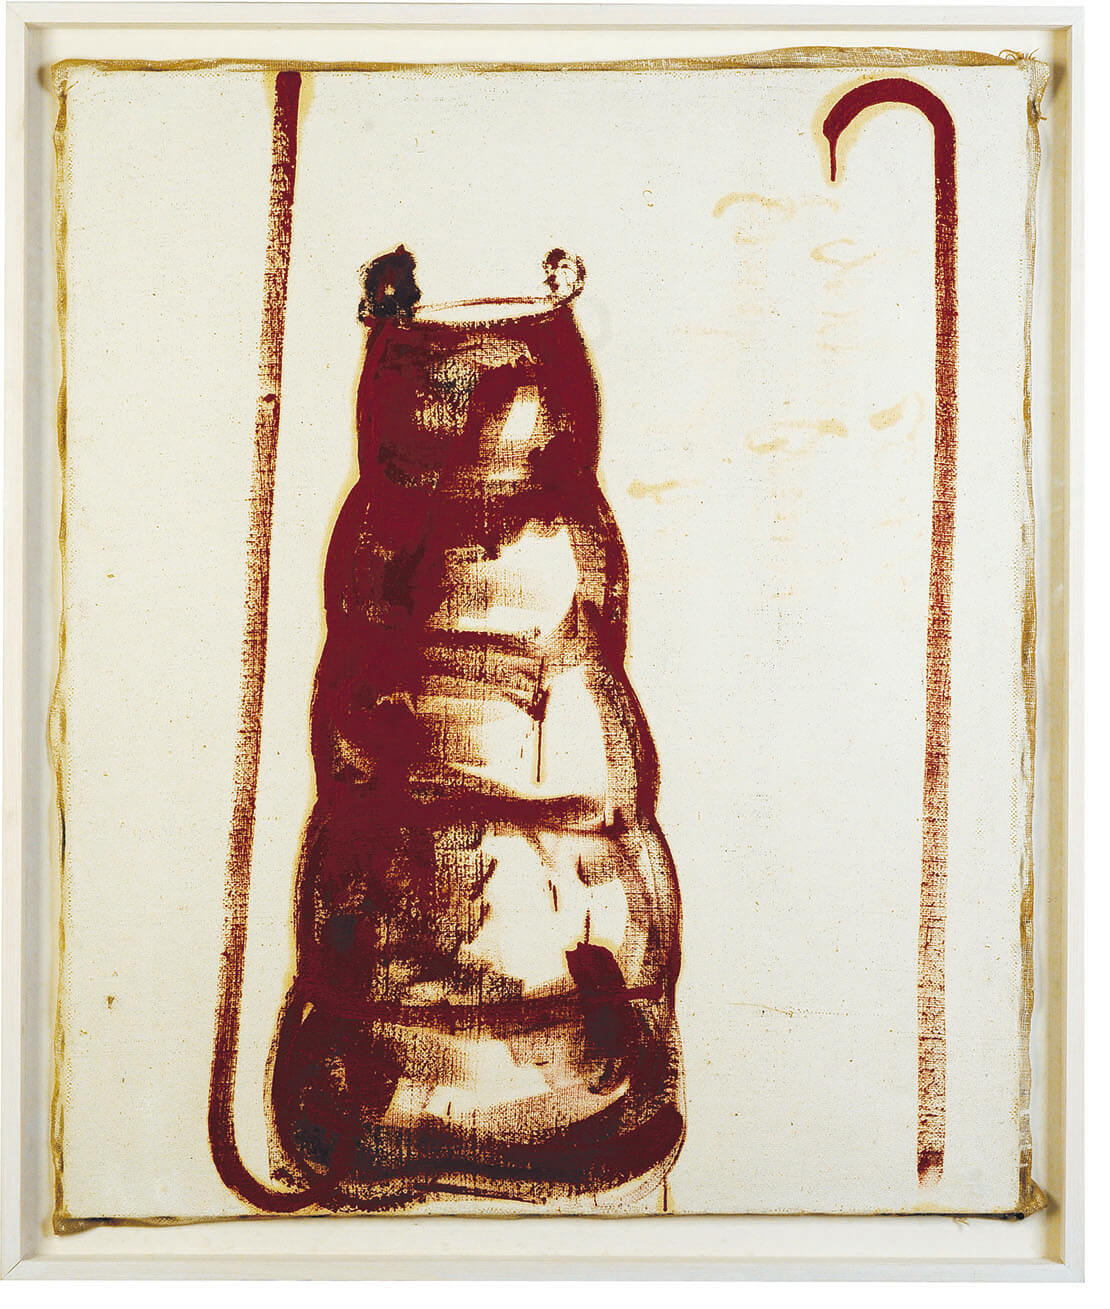 Joseph Beuys, Ohne Titel (Friedrichshof), 1983, Privatsammlung / Bildrecht, Wien 2021; das Werk entstand anlässlich eines Besuchs des Künstlers am Friedrichshof von Otto Mühl 